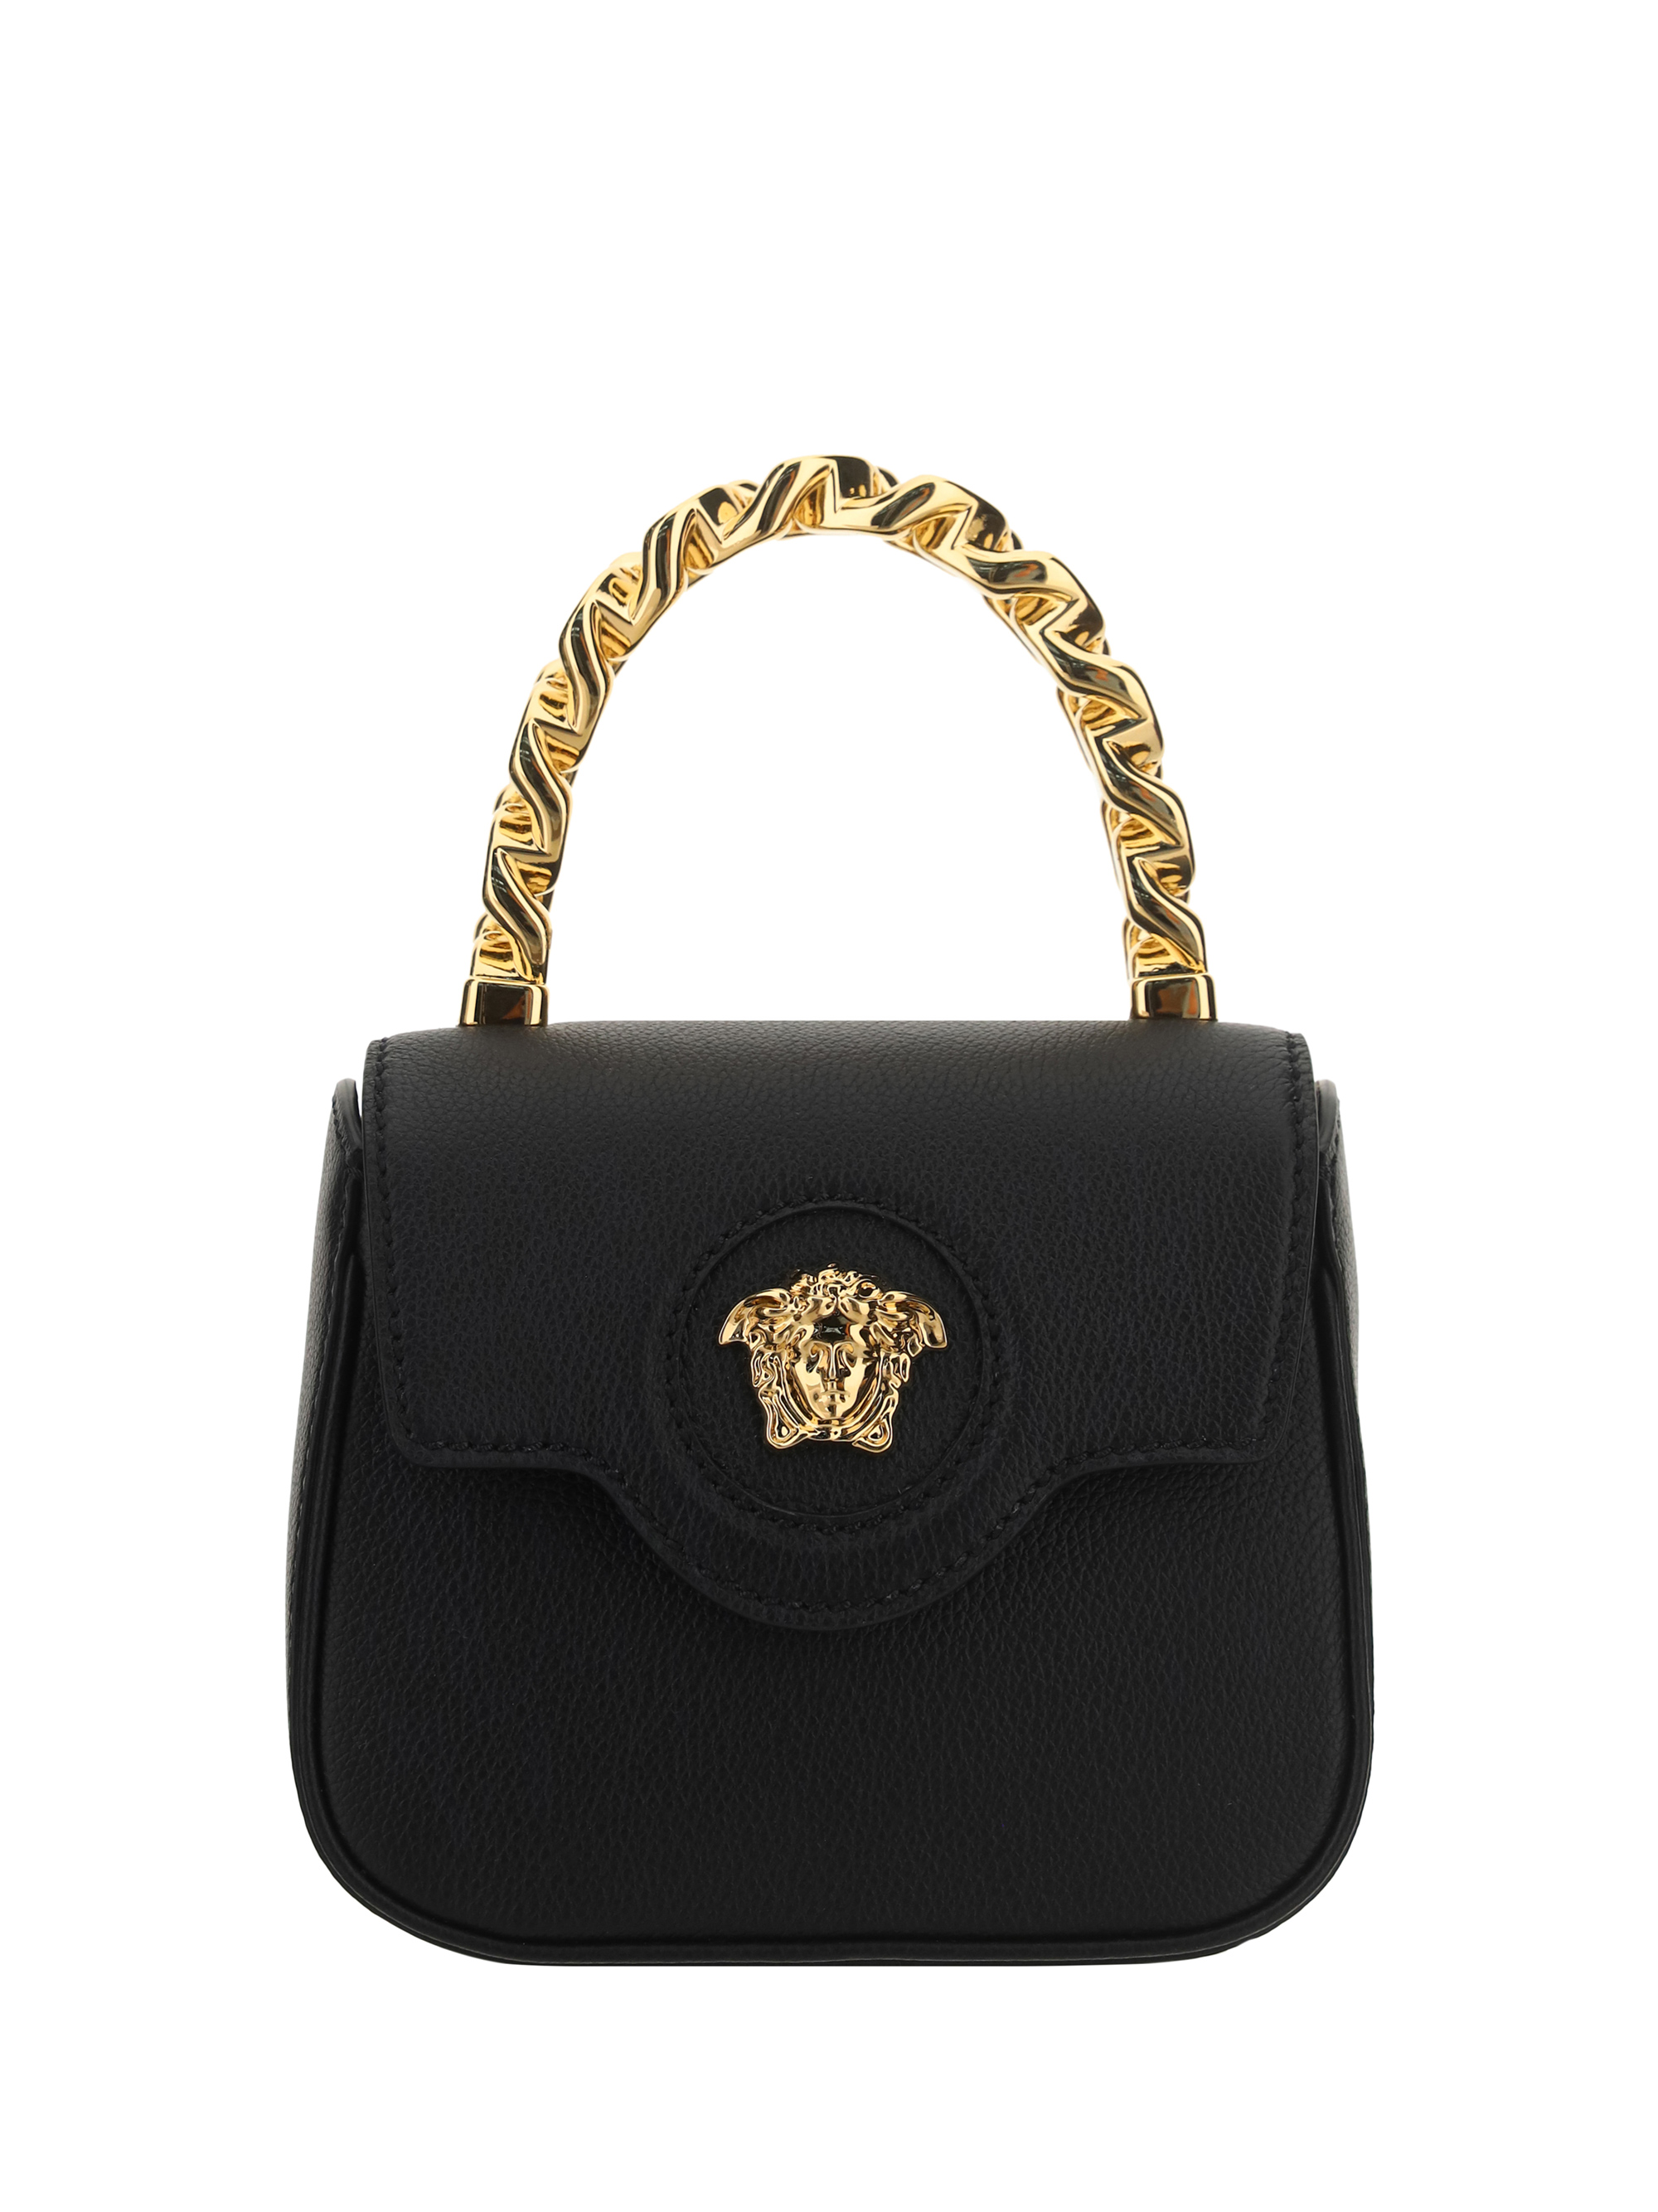 Versace Handbag In Nero/oro